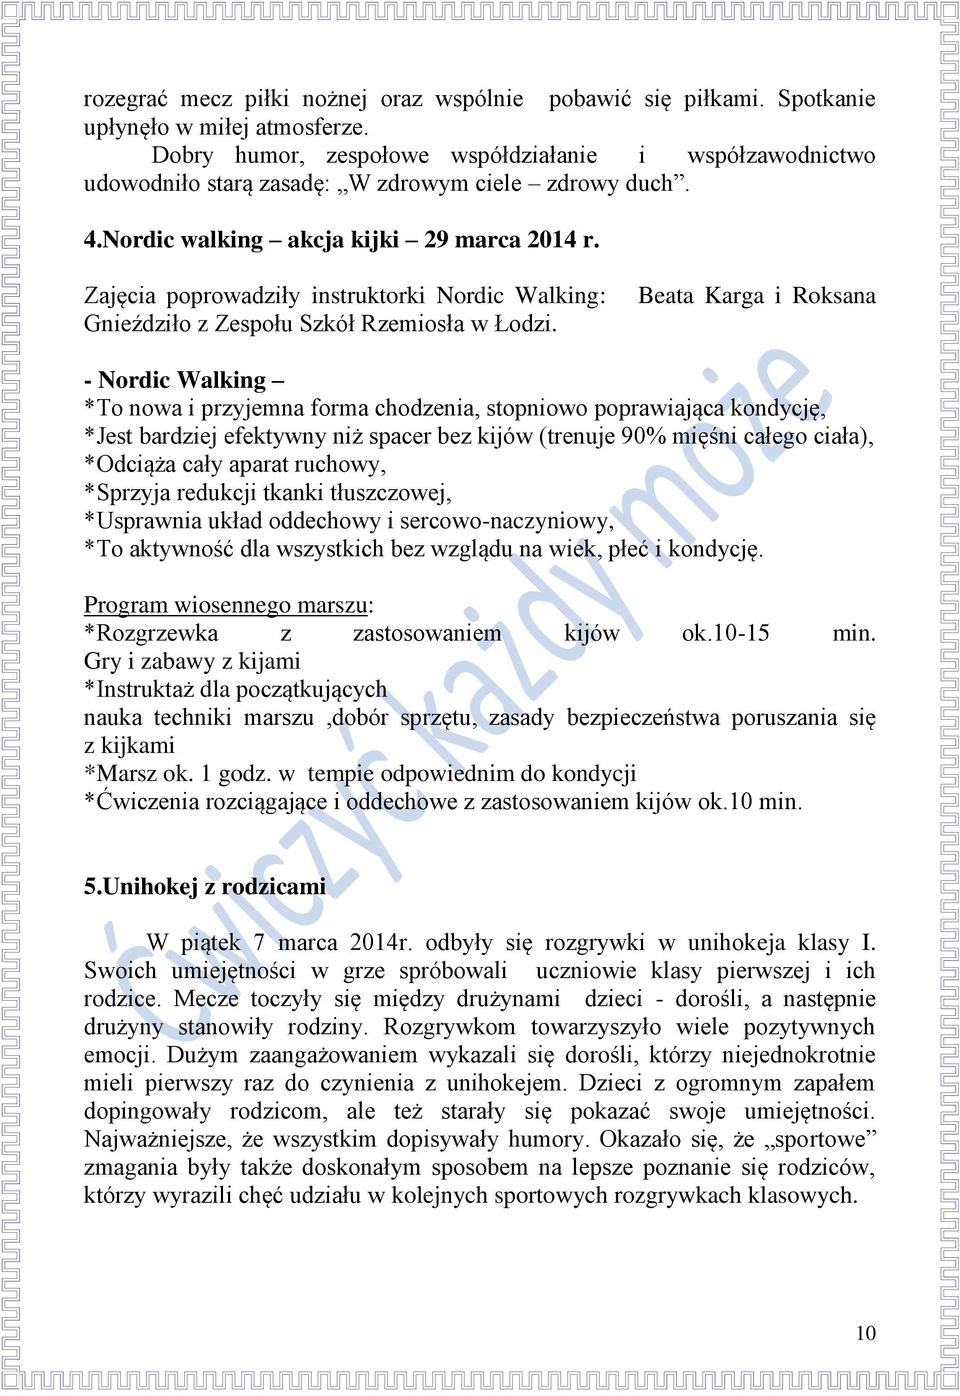 Zajęcia poprowadziły instruktorki Nordic Walking: Gnieździło z Zespołu Szkół Rzemiosła w Łodzi.